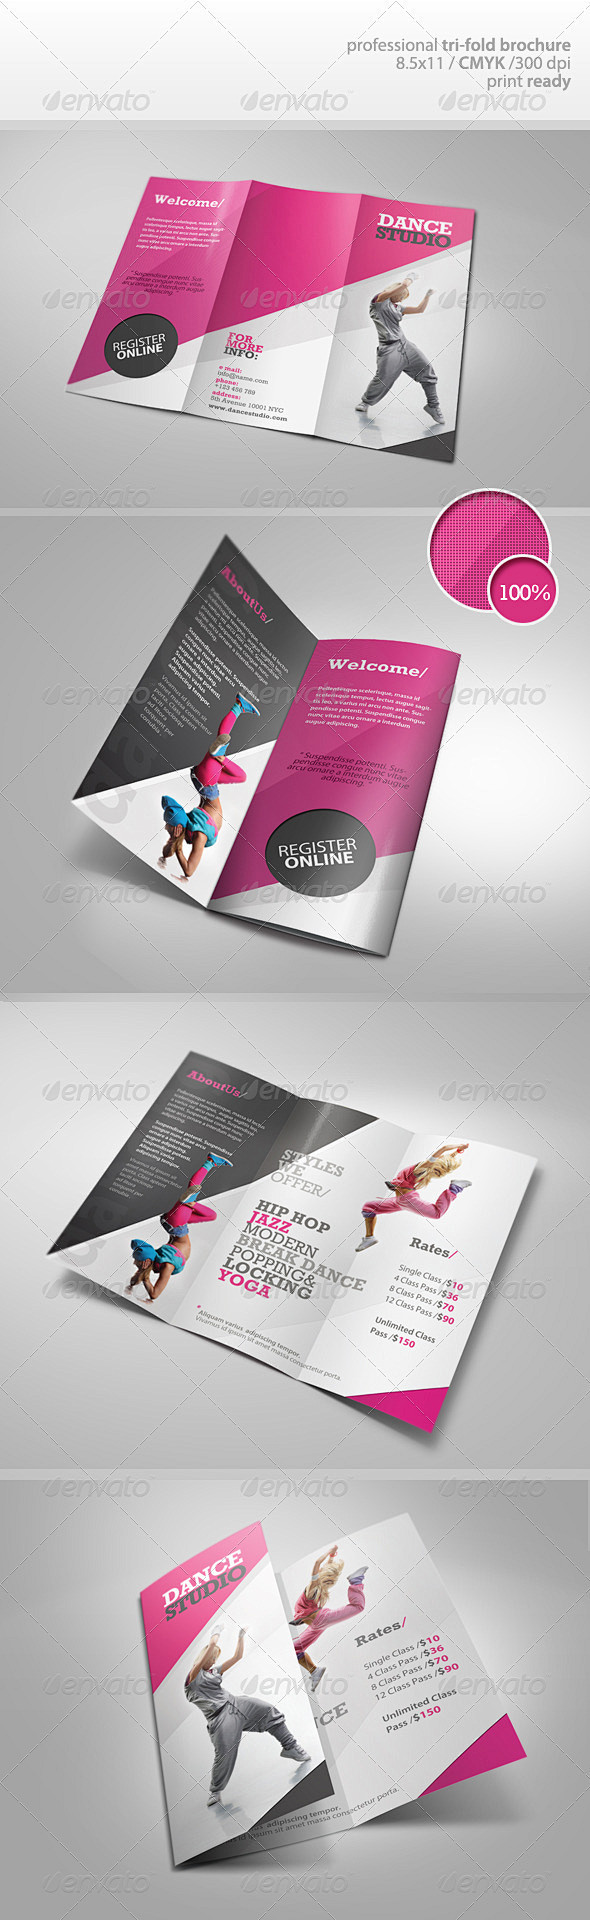 Dance Studio Brochur...